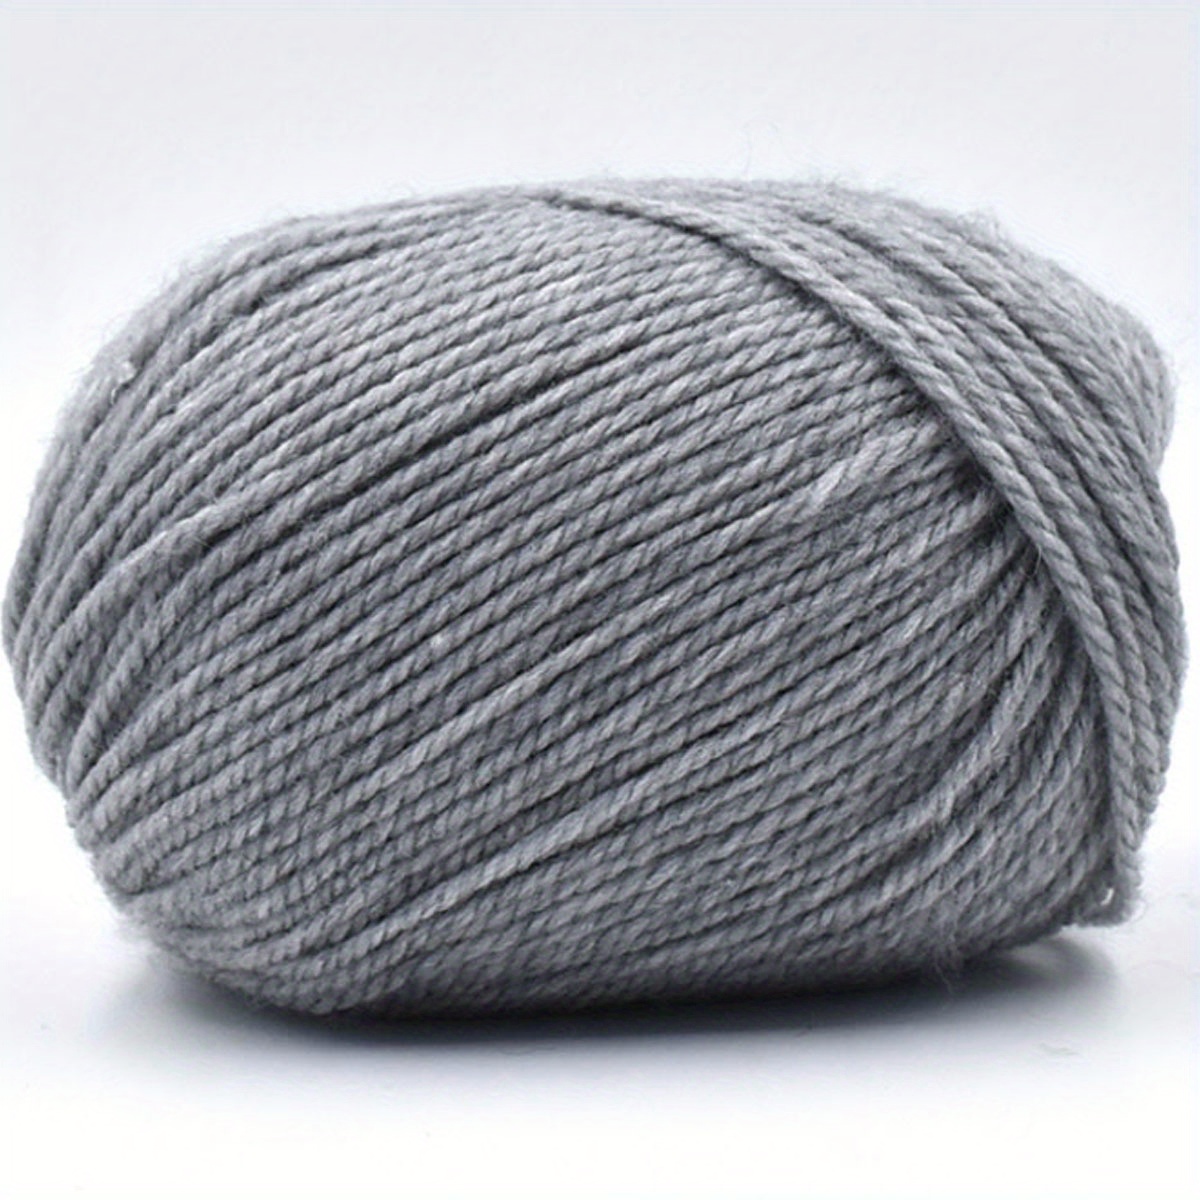 Wool thread medium thick mercerized cotton wool thread 37 cashmere thread  hand-woven diy scarf yarn yarn – Elsaboard Wool